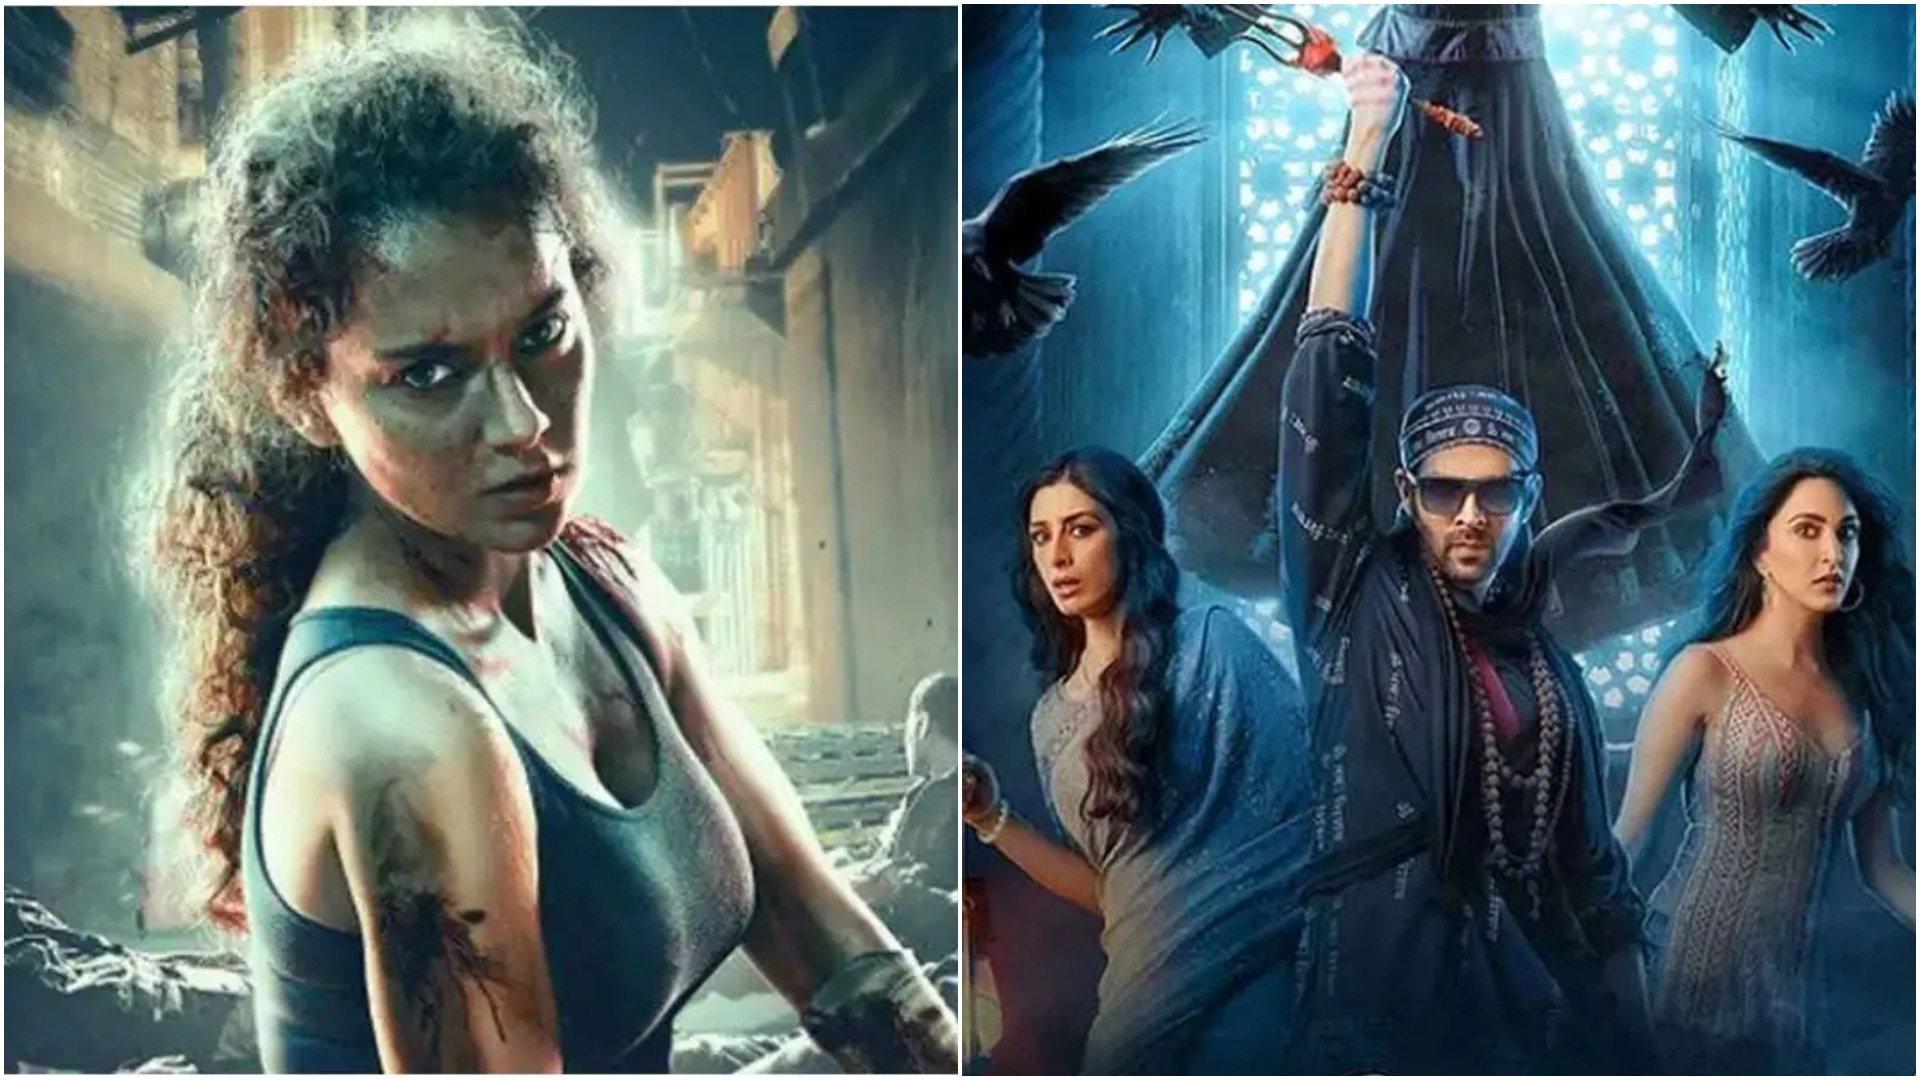 भूल भुलैया 2' और कंगना की फिल्म 'धाकड़' रिलीज हो चुकी है और इसके पहले दिन की कमाई भी सामने आ गई है | News hindi, News bollywood, news live,